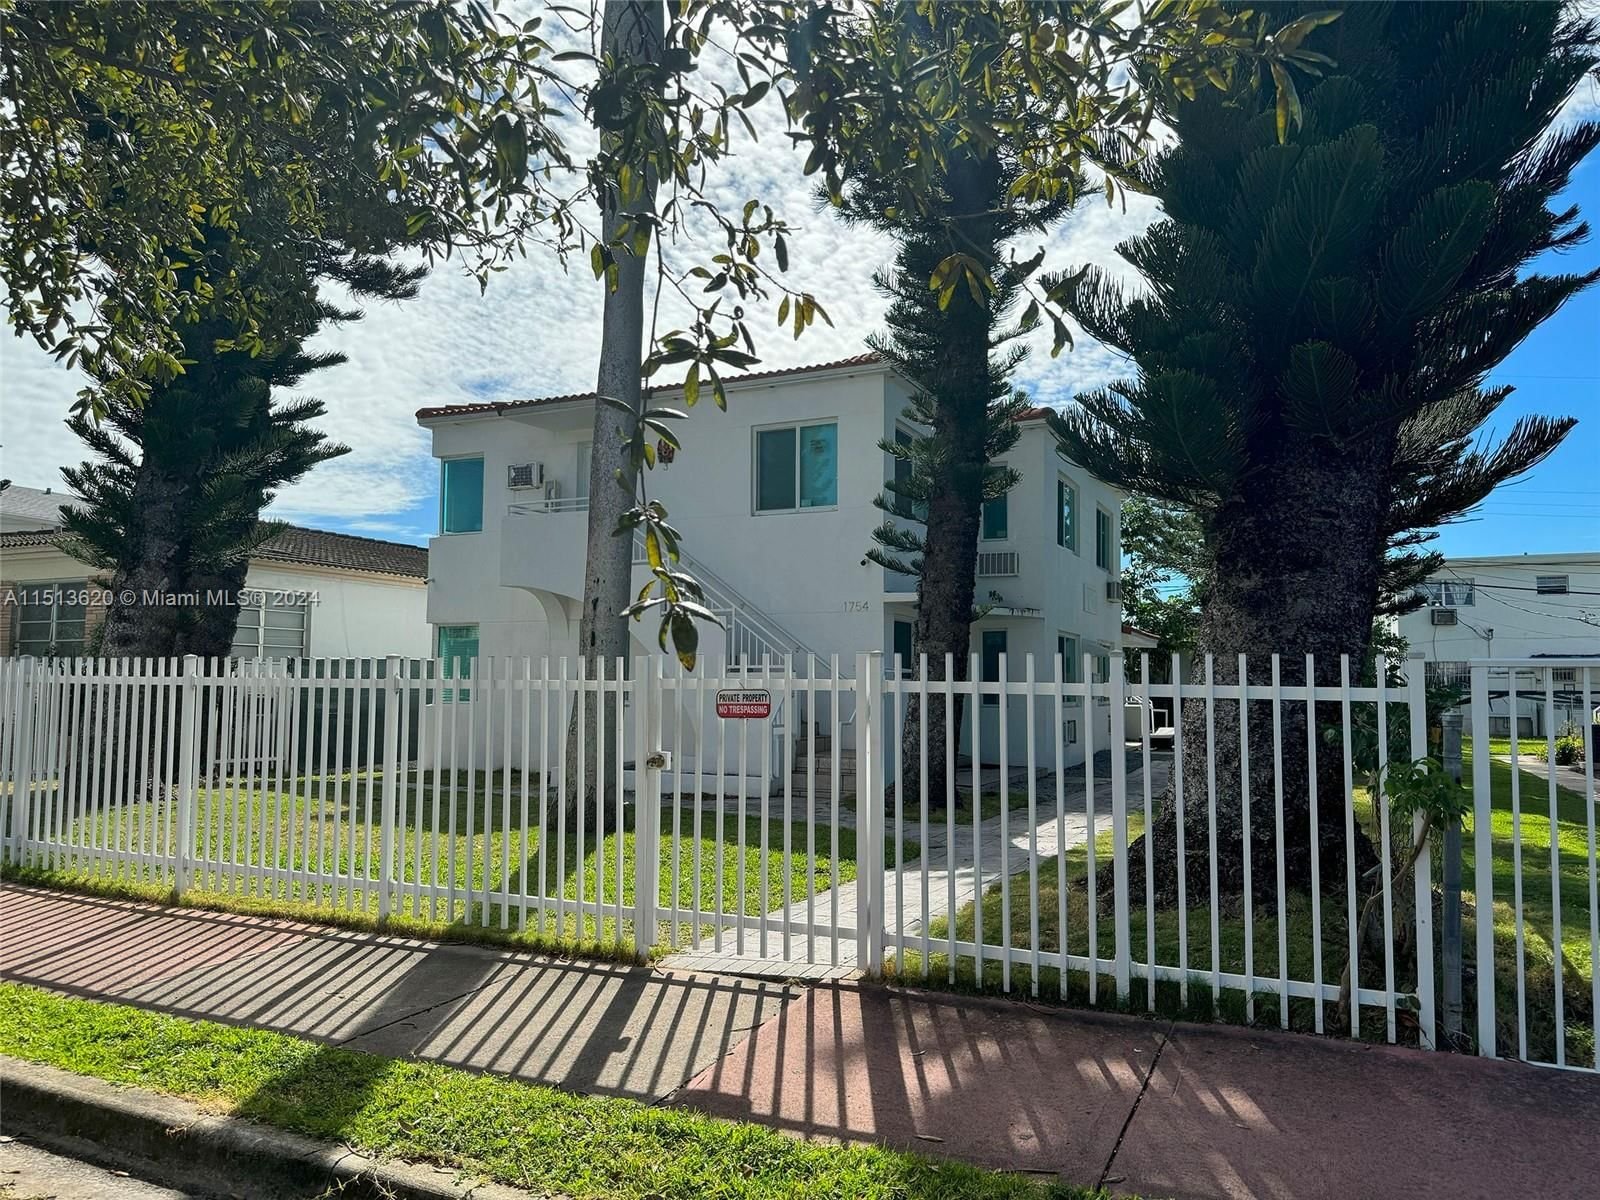 Real estate property located at 1754 Marseille Dr, Miami-Dade County, ISLE OF NORMANDY MIAMI VI, Miami Beach, FL